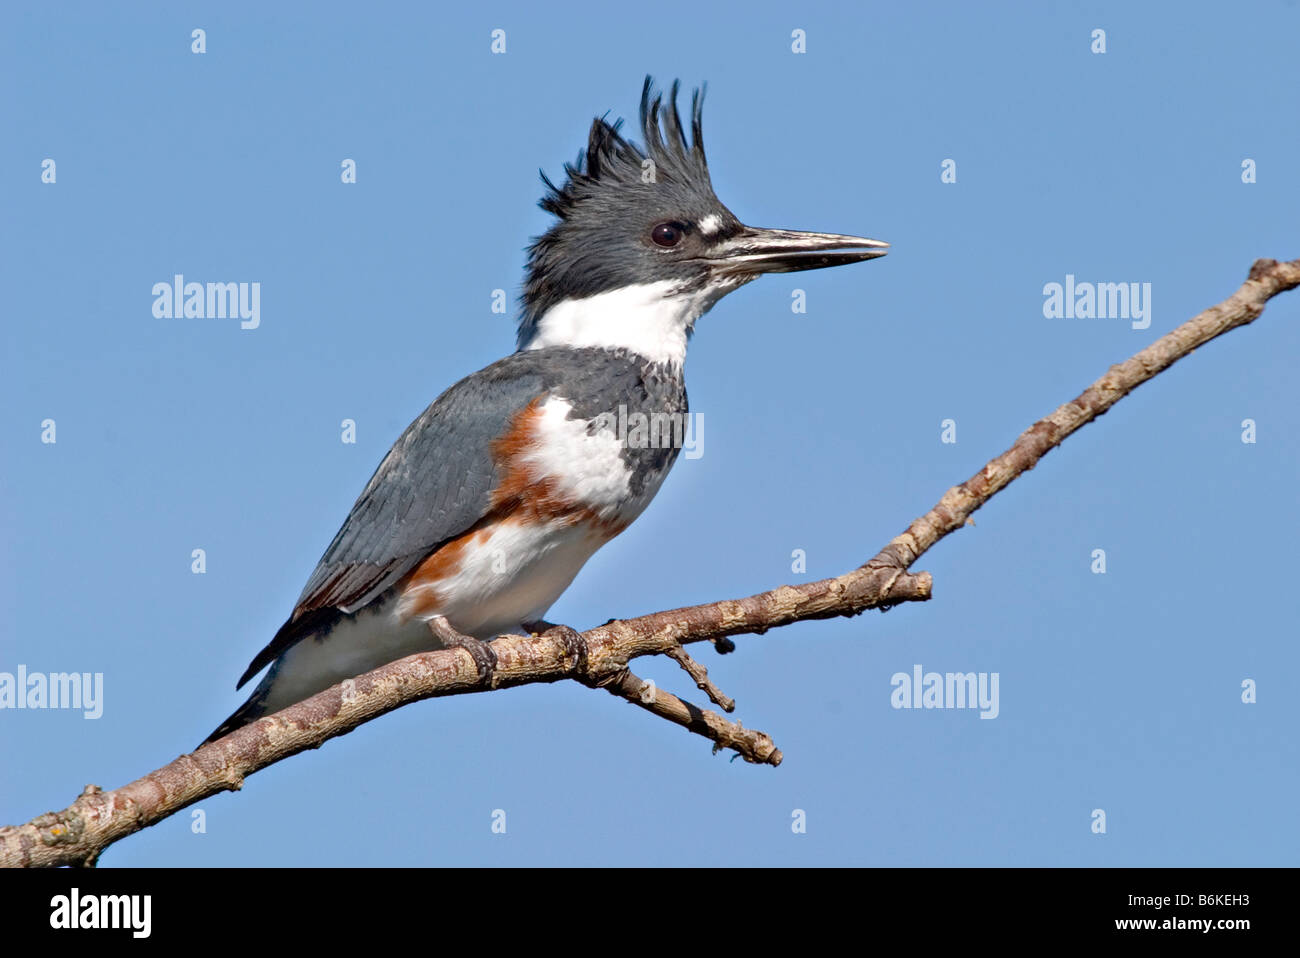 Belted Kingfisher - Ornithology